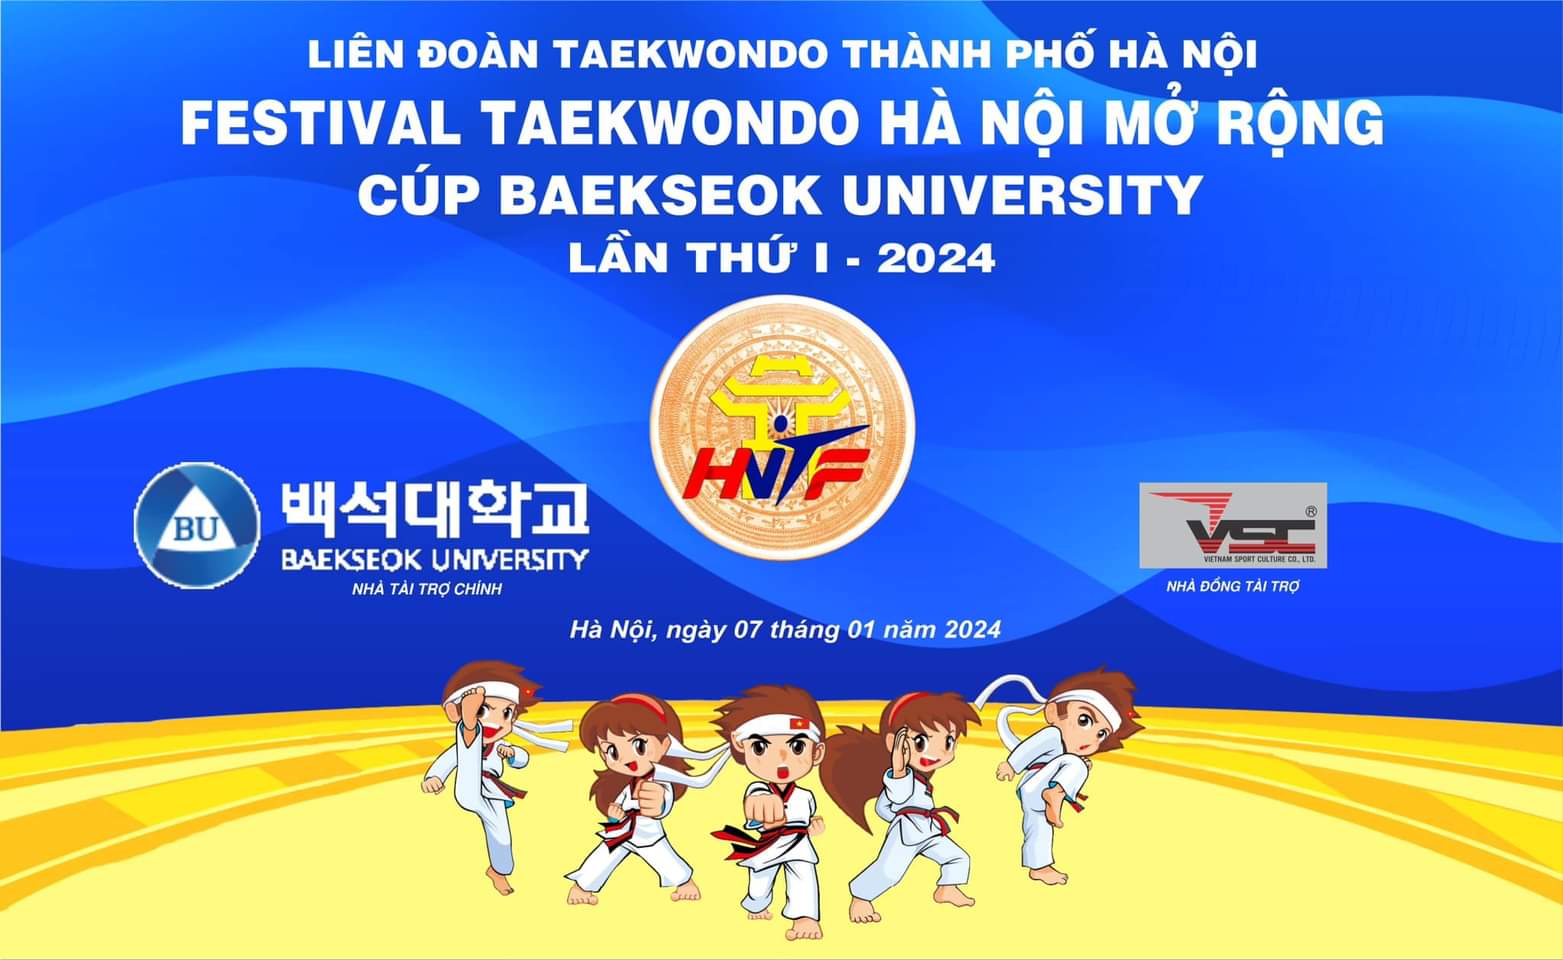 Sự kiện Festival Taekwondo Hà Nội mở rộng - Cúp Backseok University lần thứ 1 năm 2024